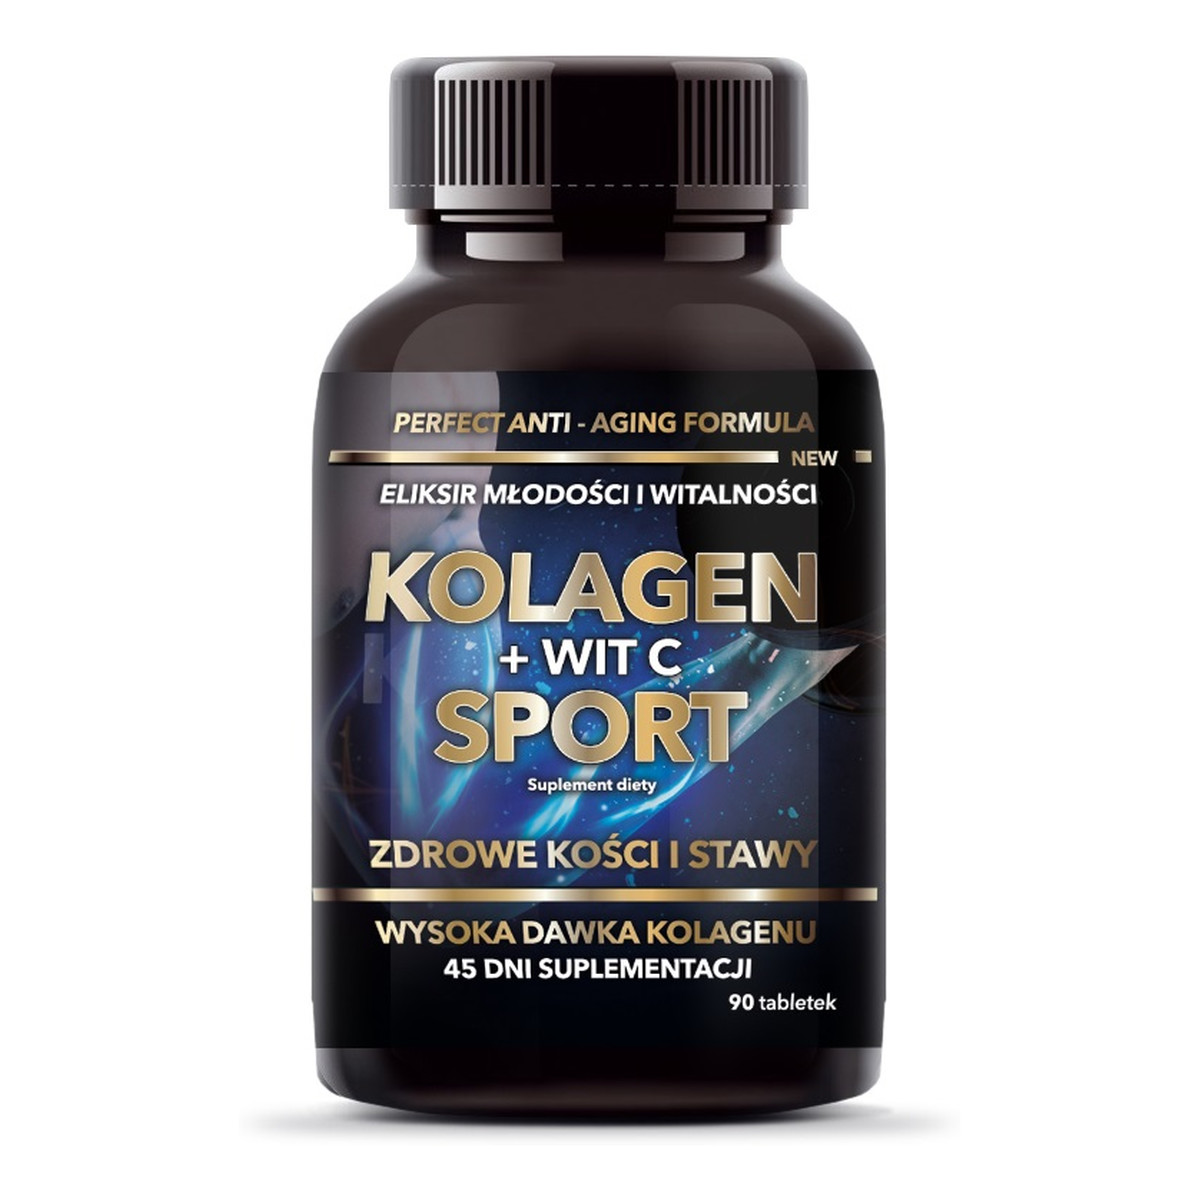 Intenson Kolagen + witamina c sport suplement diety 90 tabletek